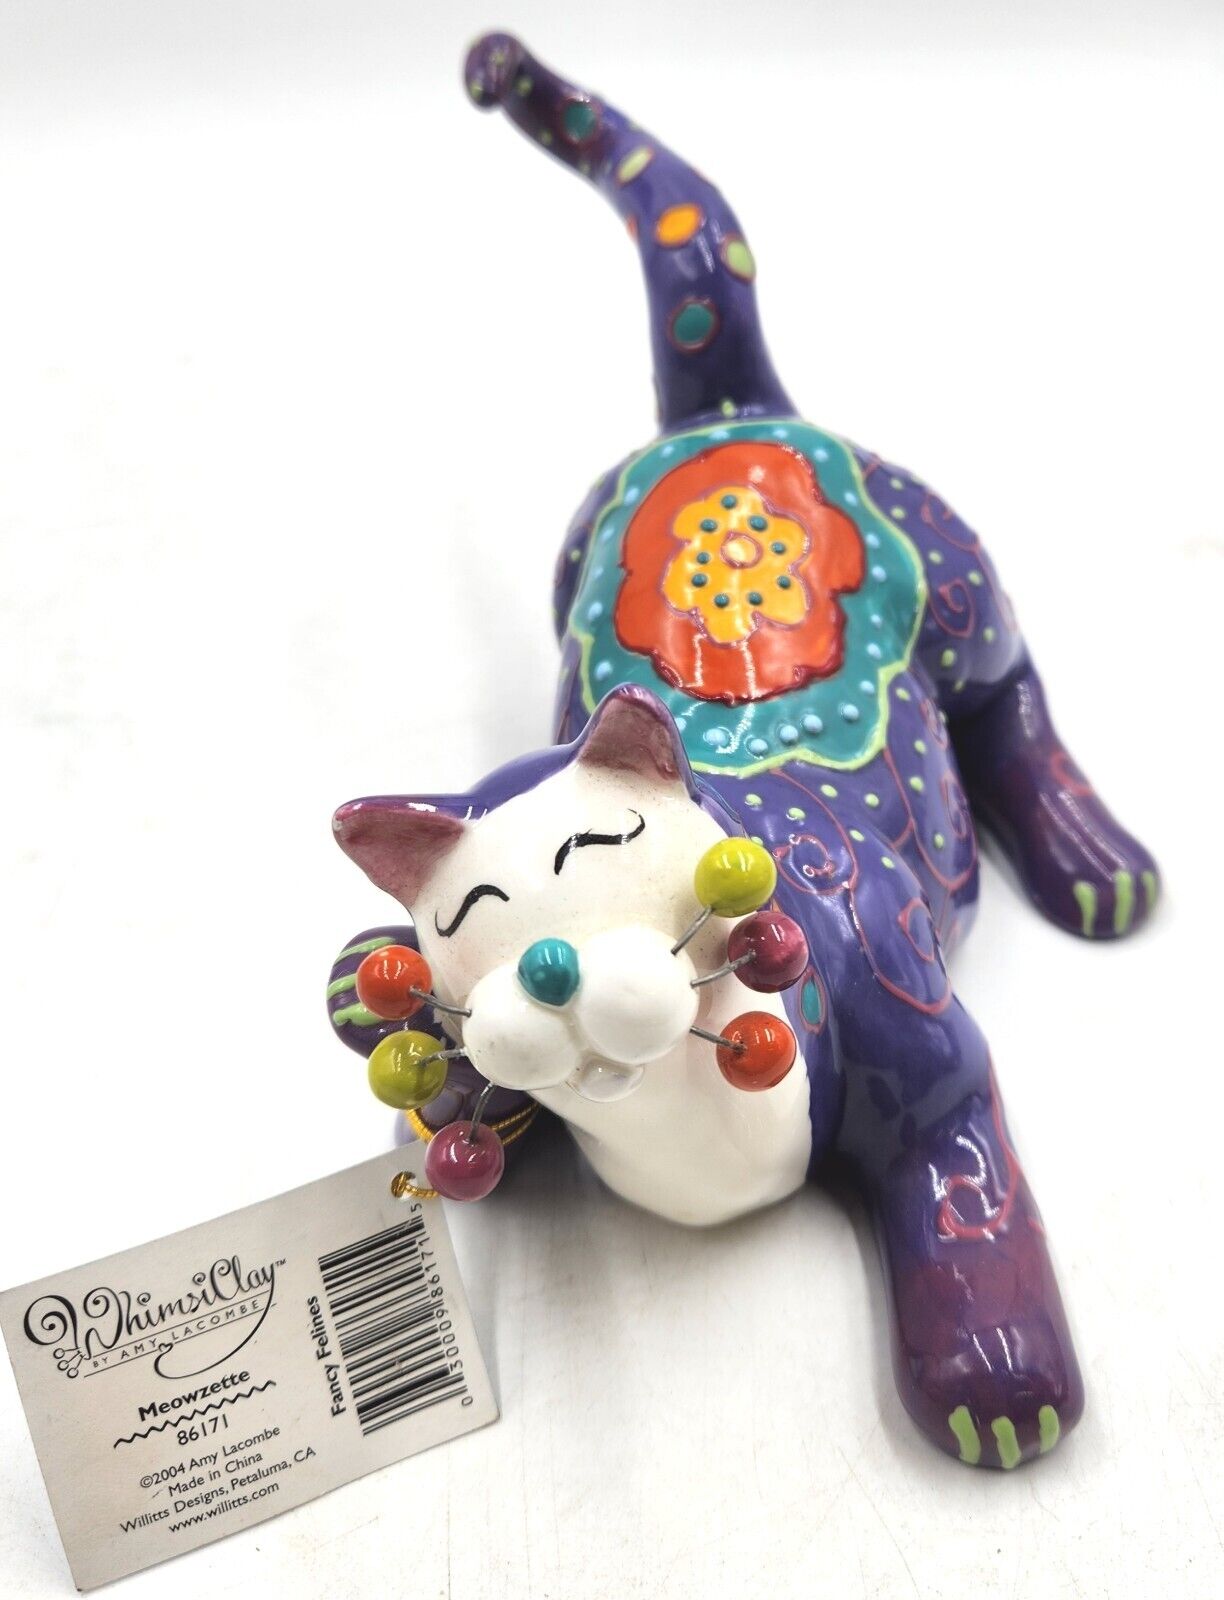 Amy Lacombe Whimsiclay Fancy Feline Cat Figurine Meowzette Purple Kitty 2005 